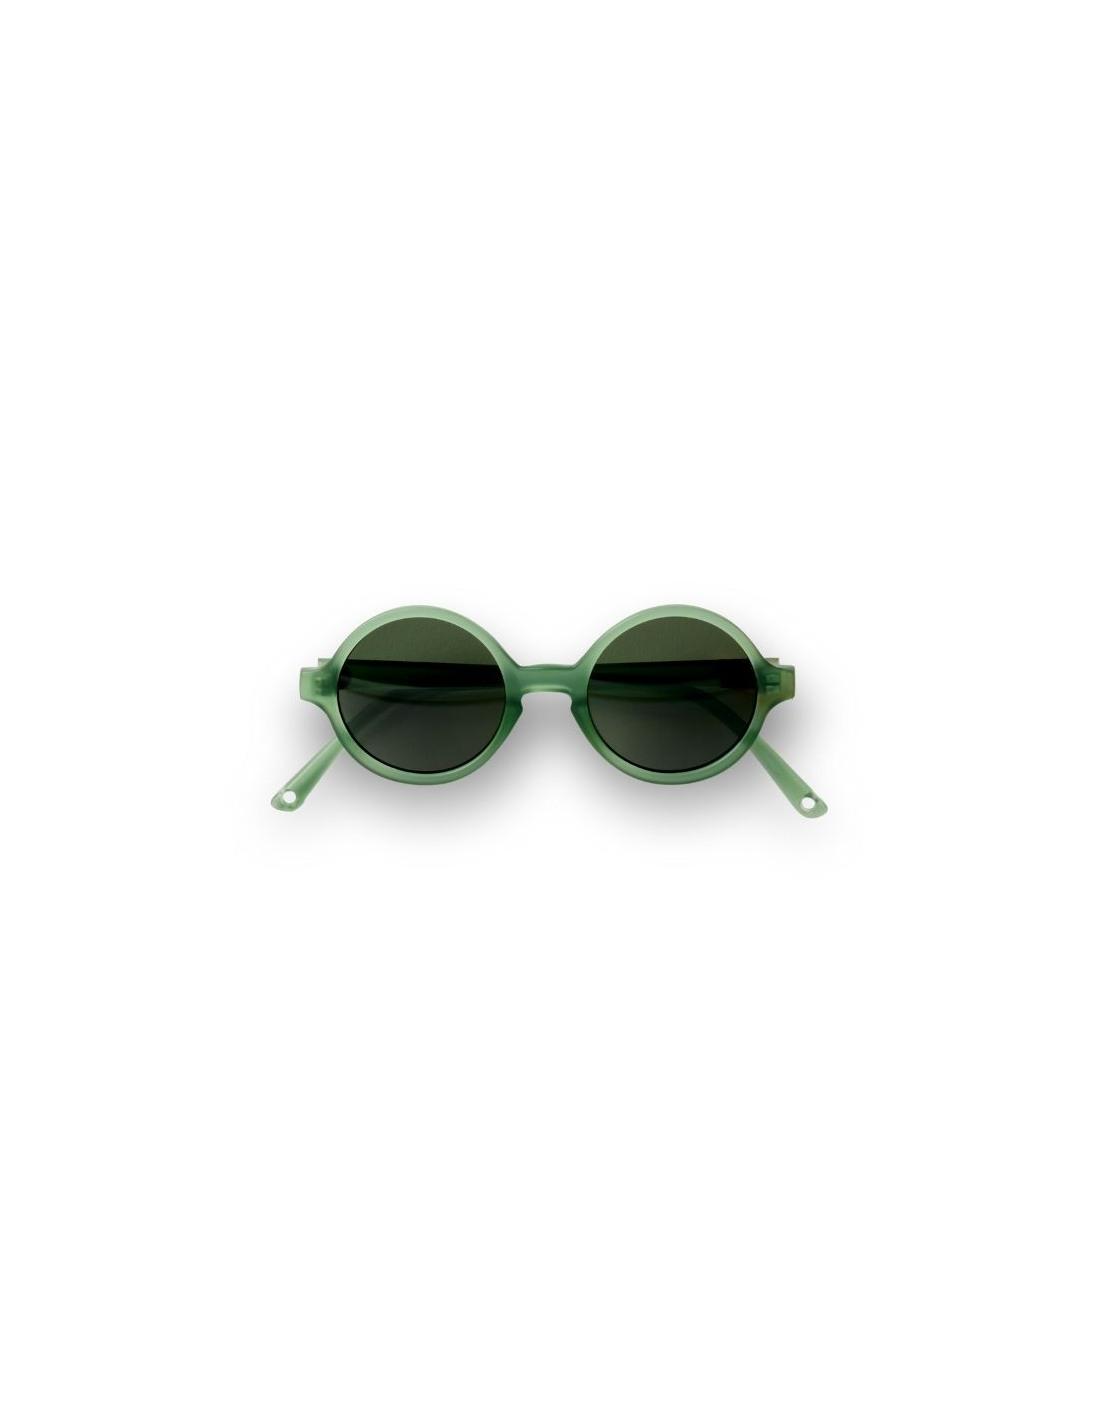 Gafas de sol redondas (verde botella semitrasparente) WOAM de Ki ET LA 